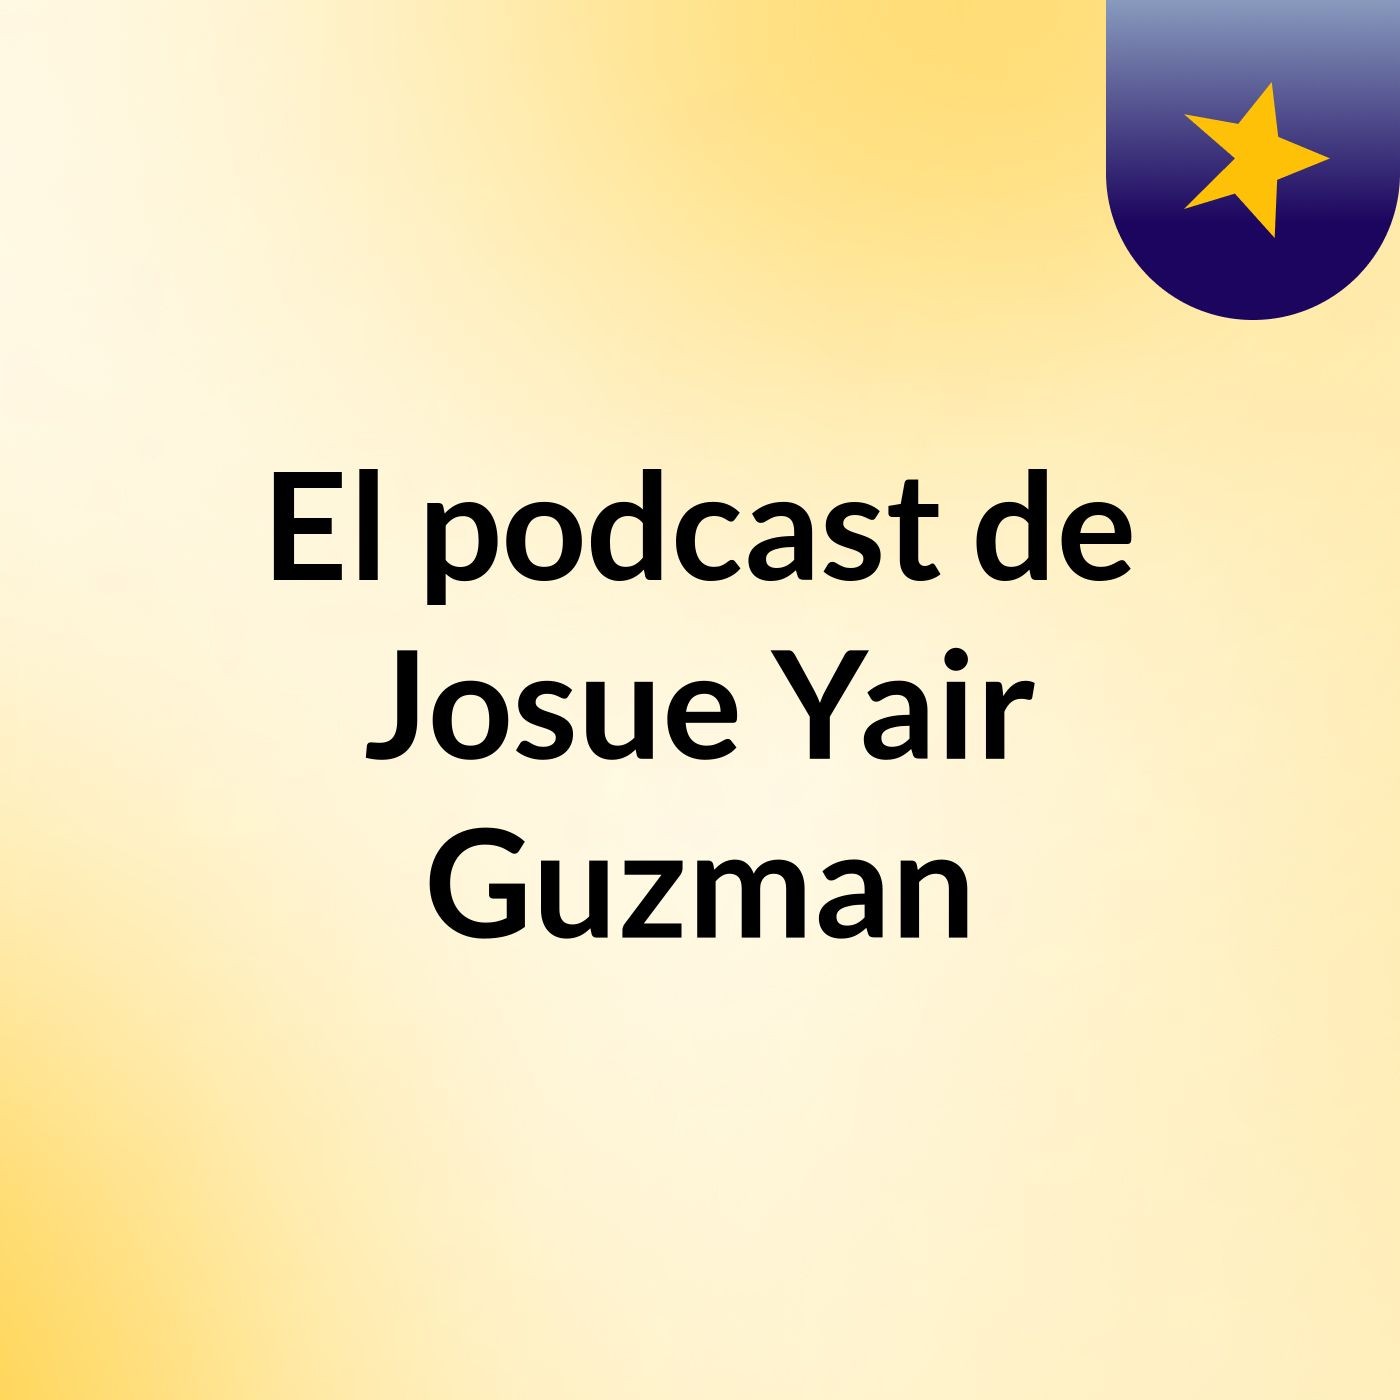 Episodio 2 - El podcast de Josue Yair Guzman